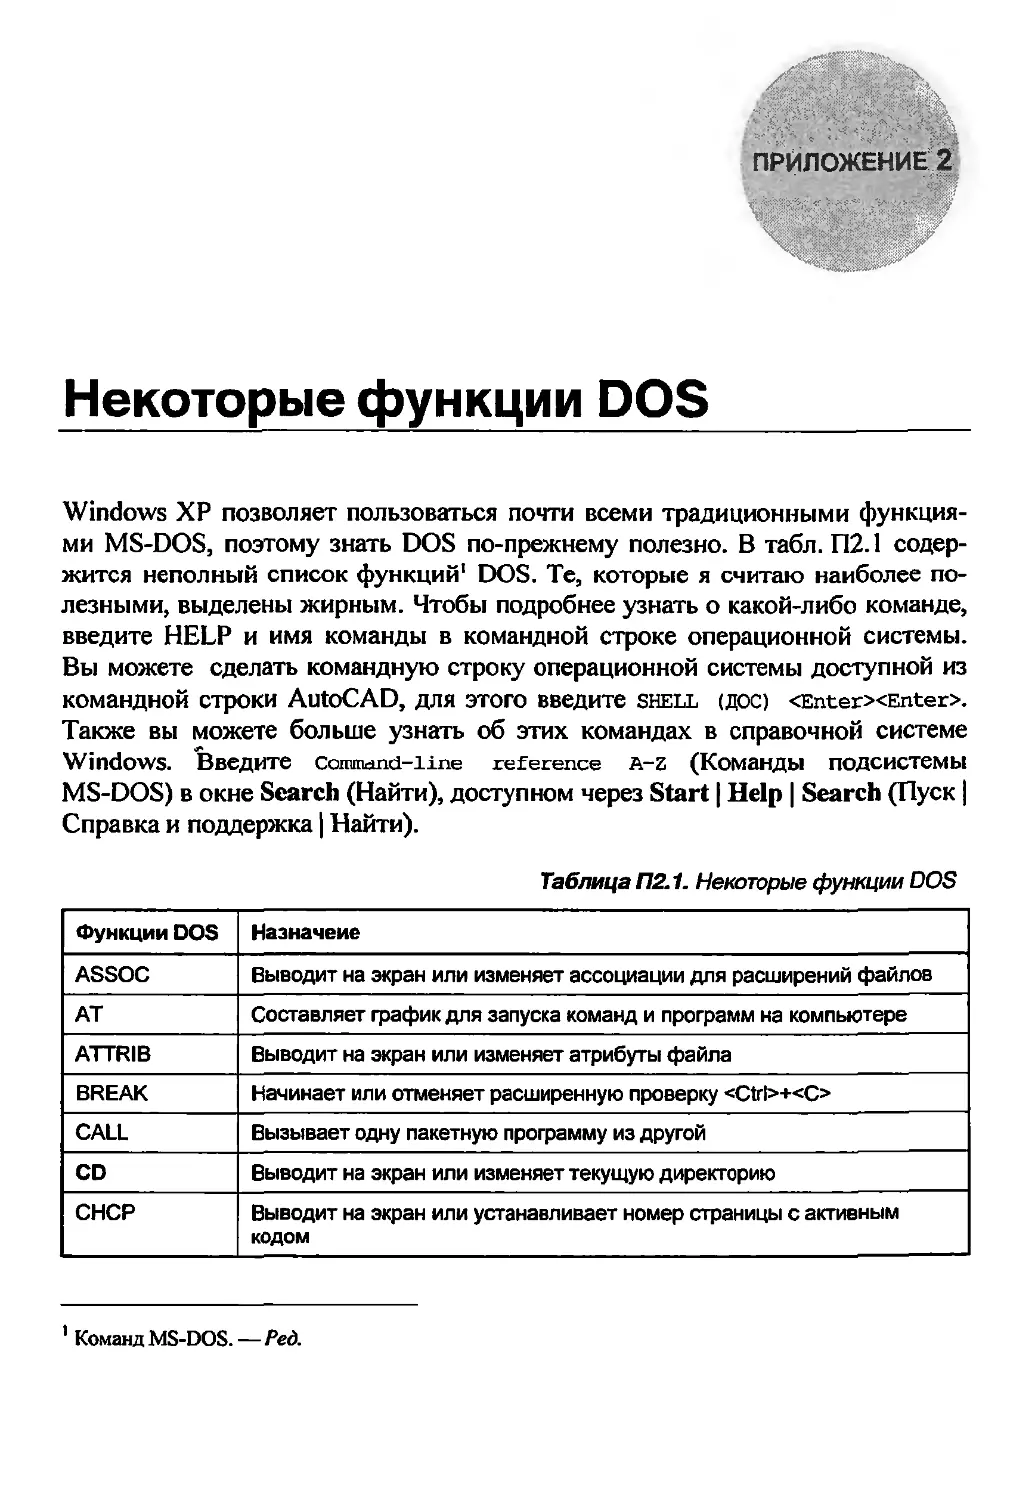 Приложение 2. Некоторые функции DOS